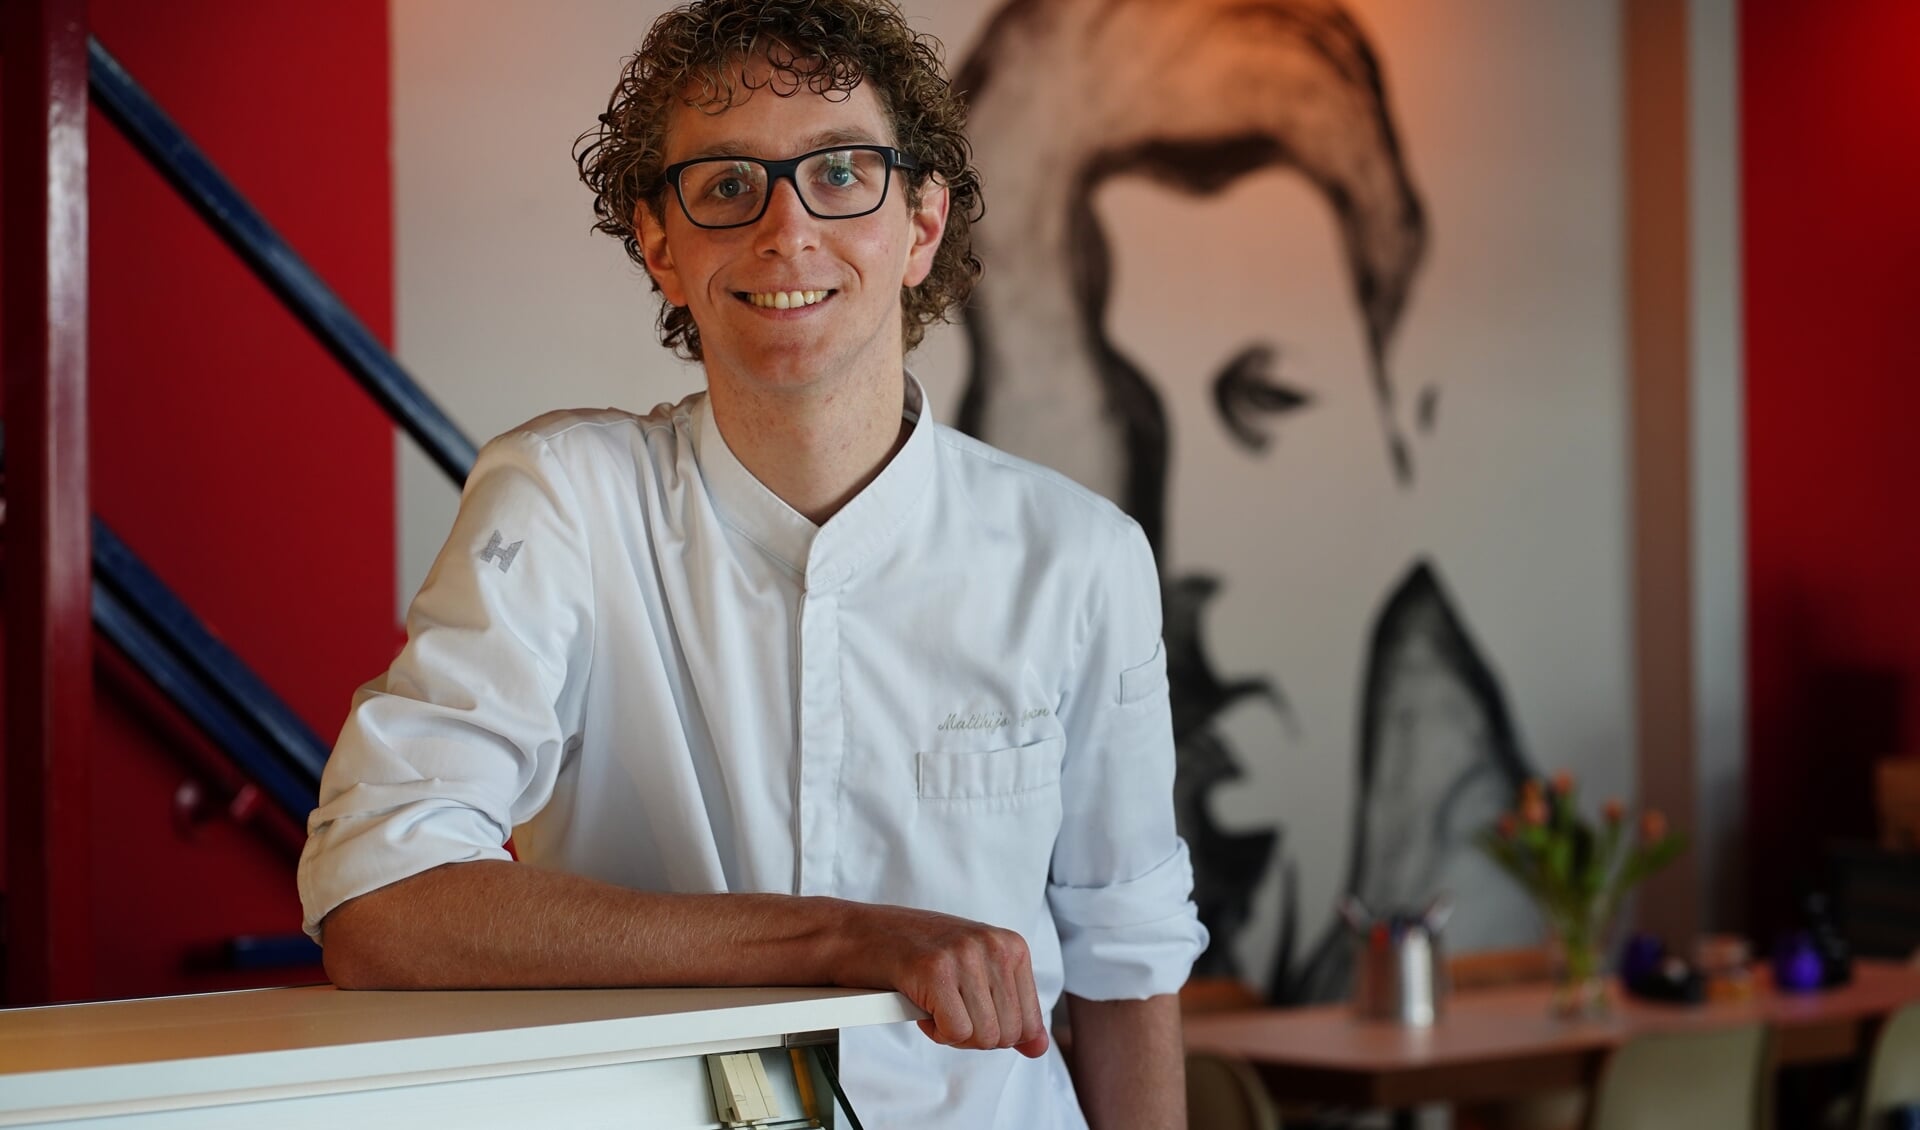 Matthijs Groen is chefkok bij Gerrit, een nieuwe horecagelegenheid in Uithoorn. 